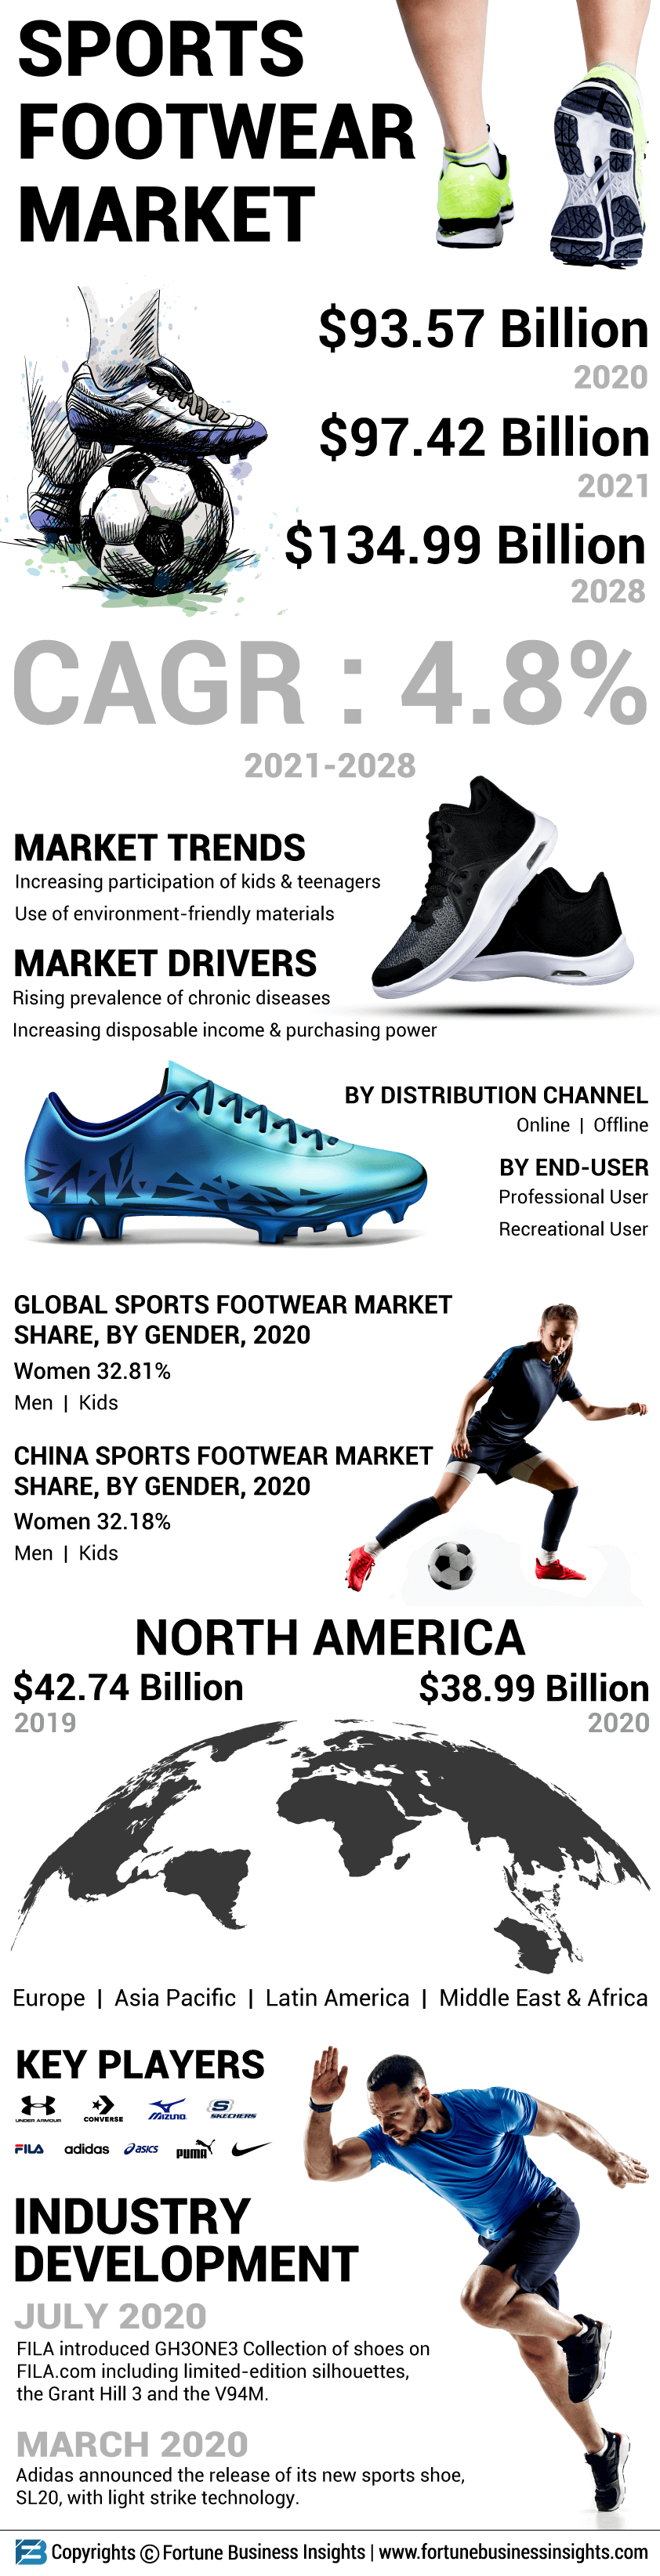 Sports Footwear Market